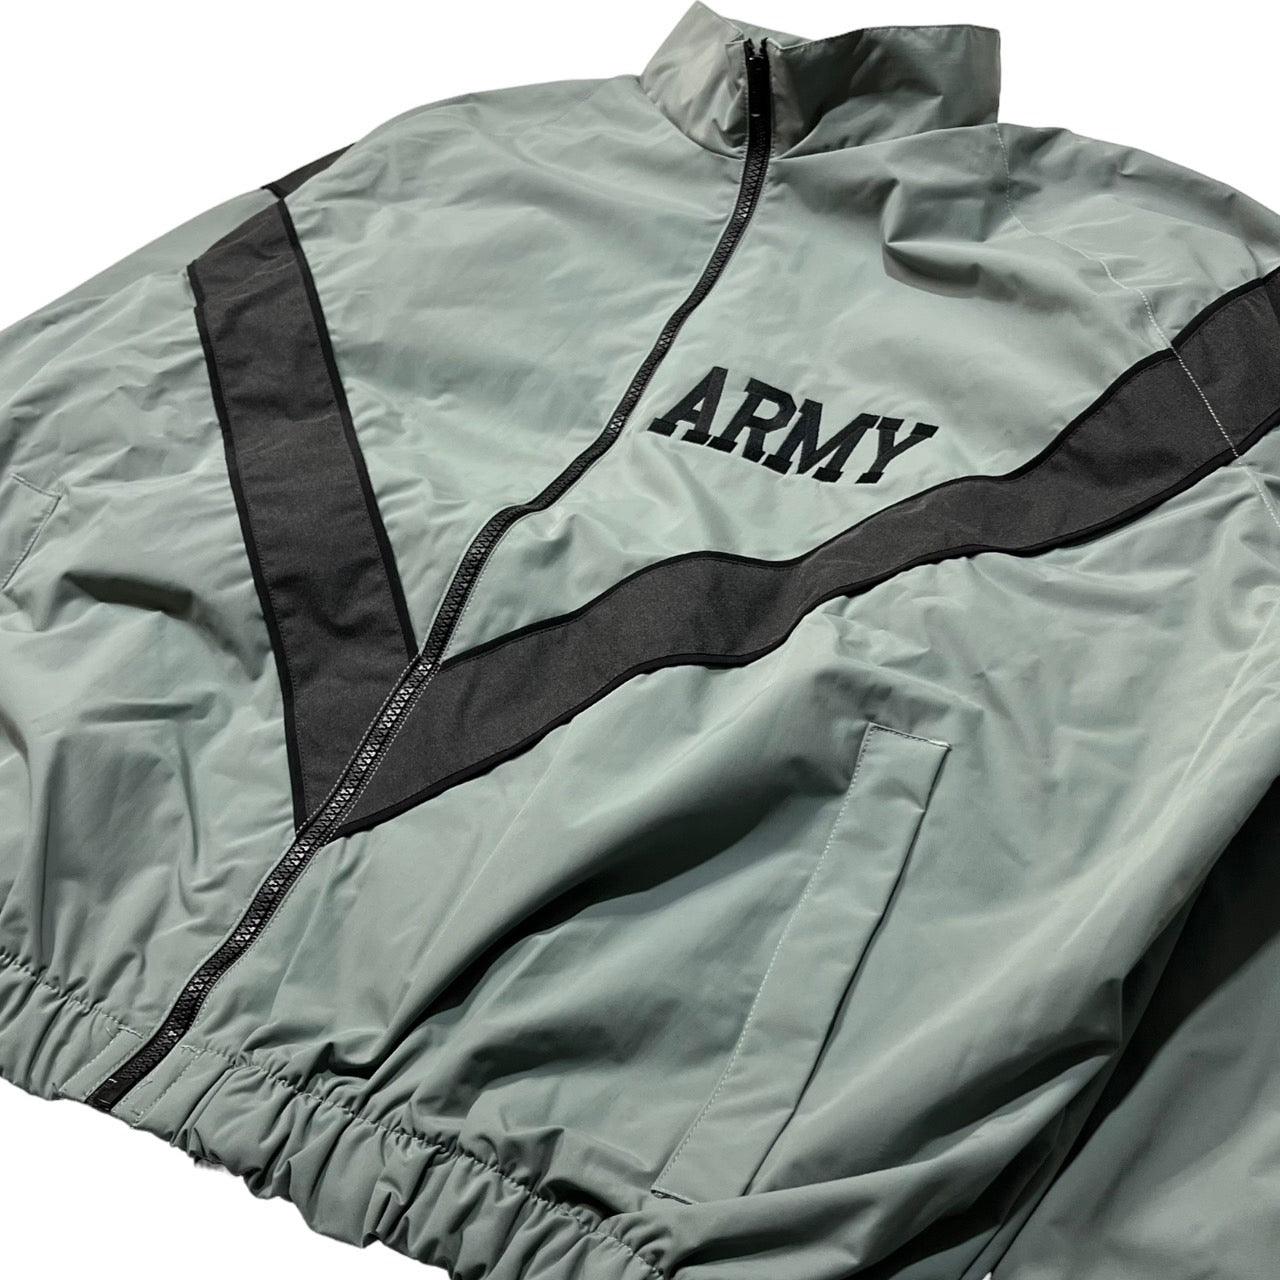 US AMRY(アメリカ軍) TRAINING JACKET/トレーニングジャケット 